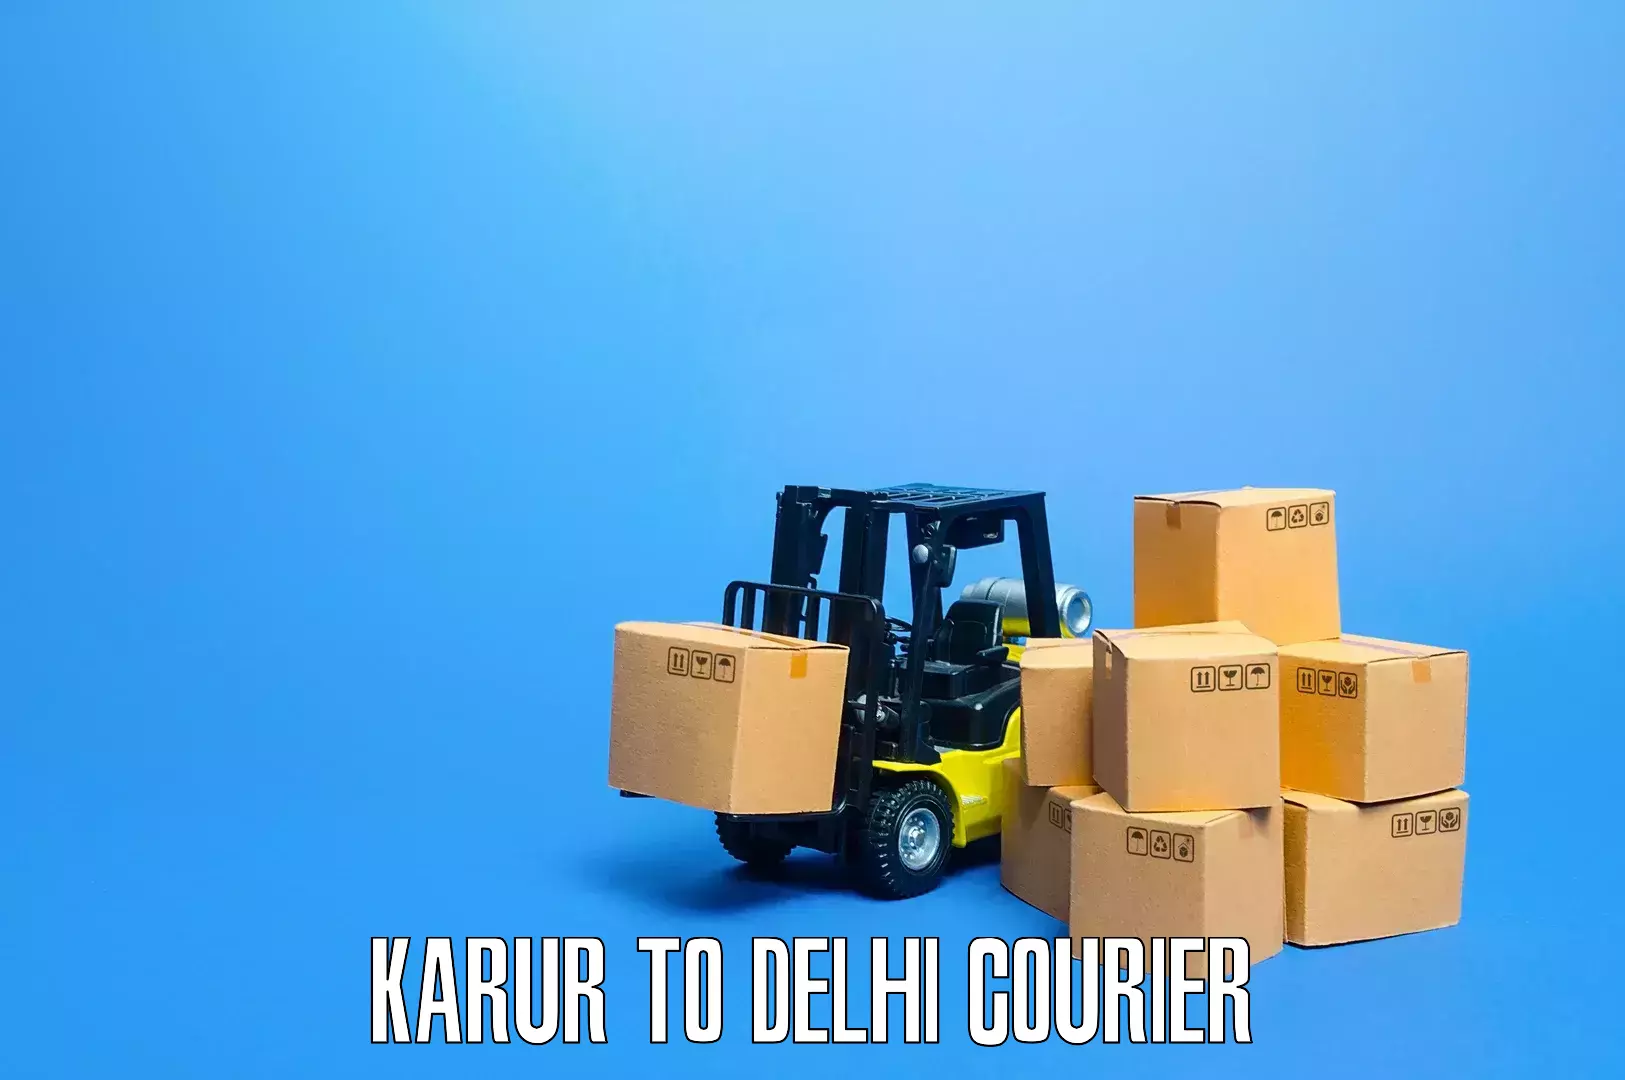 Furniture moving experts Karur to NCR